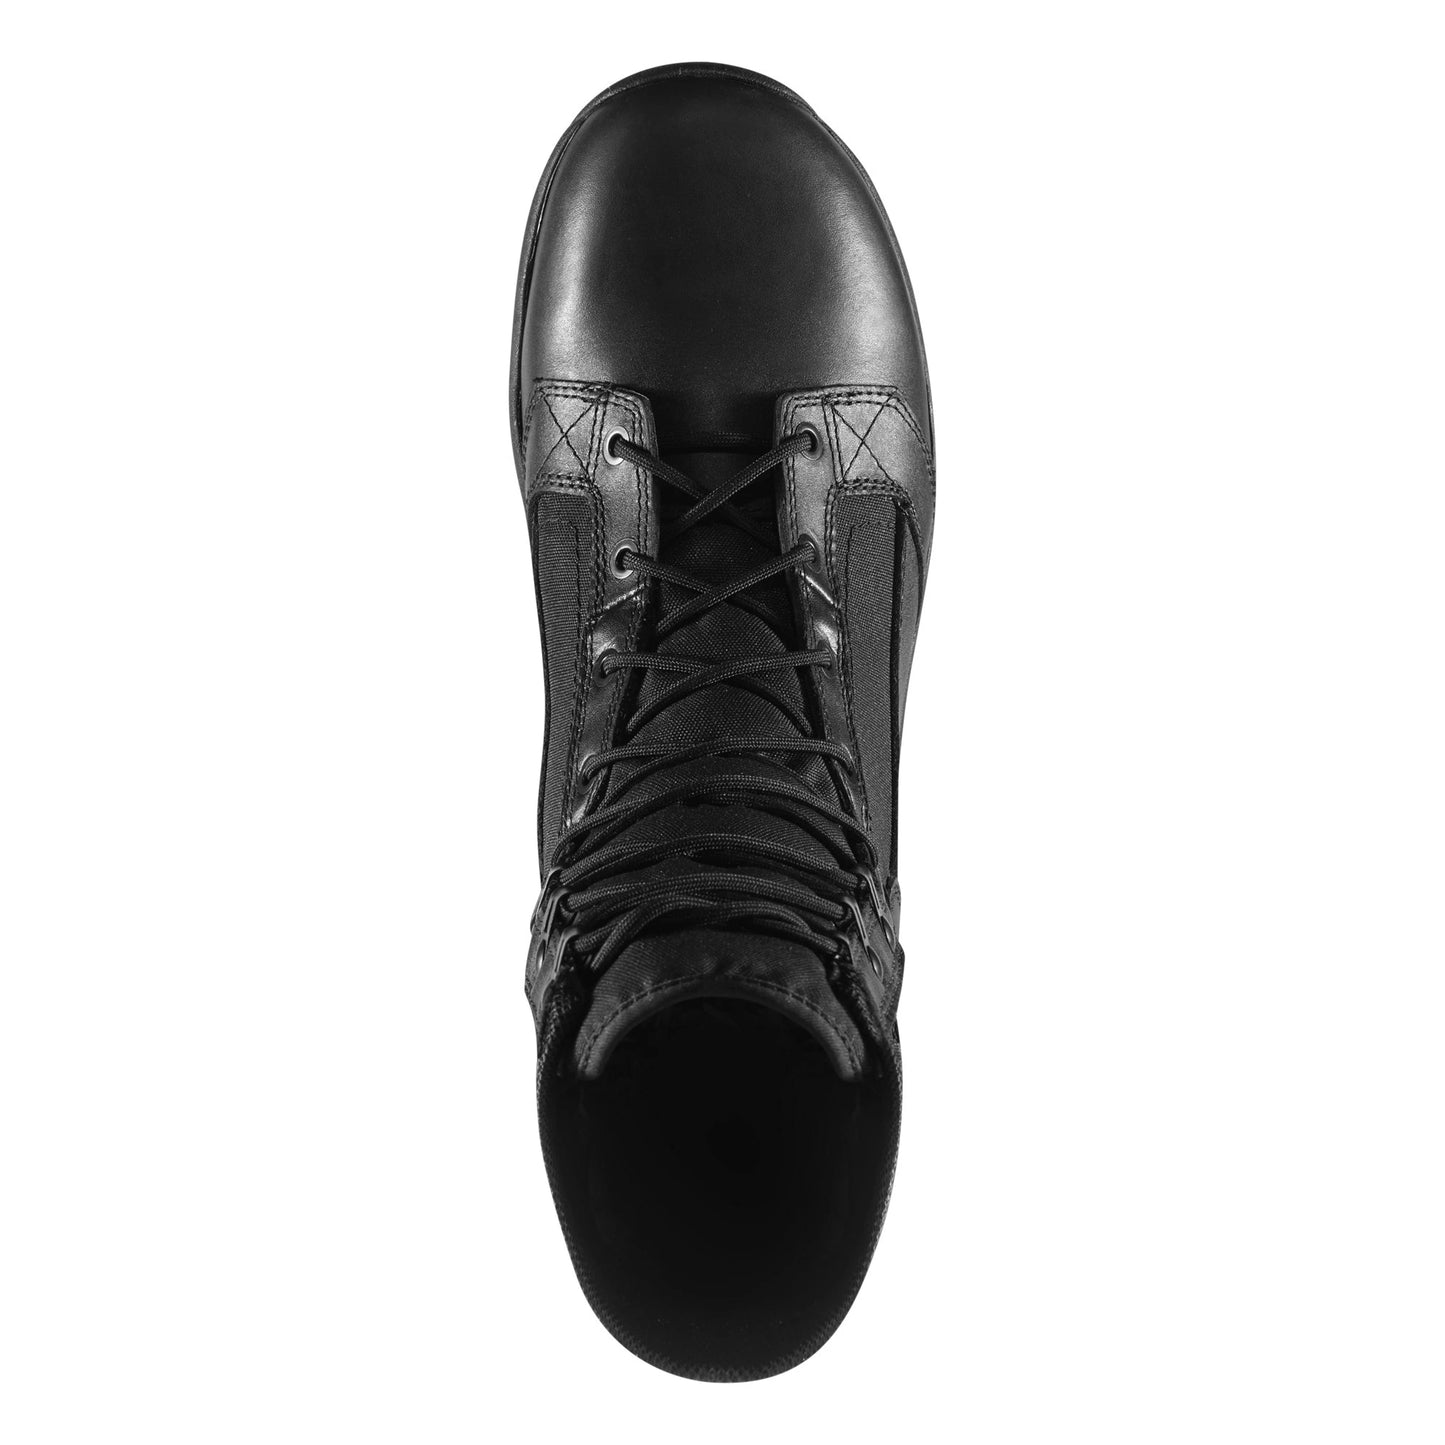 Danner | Tachyon 8" Waterproof Boot | Black